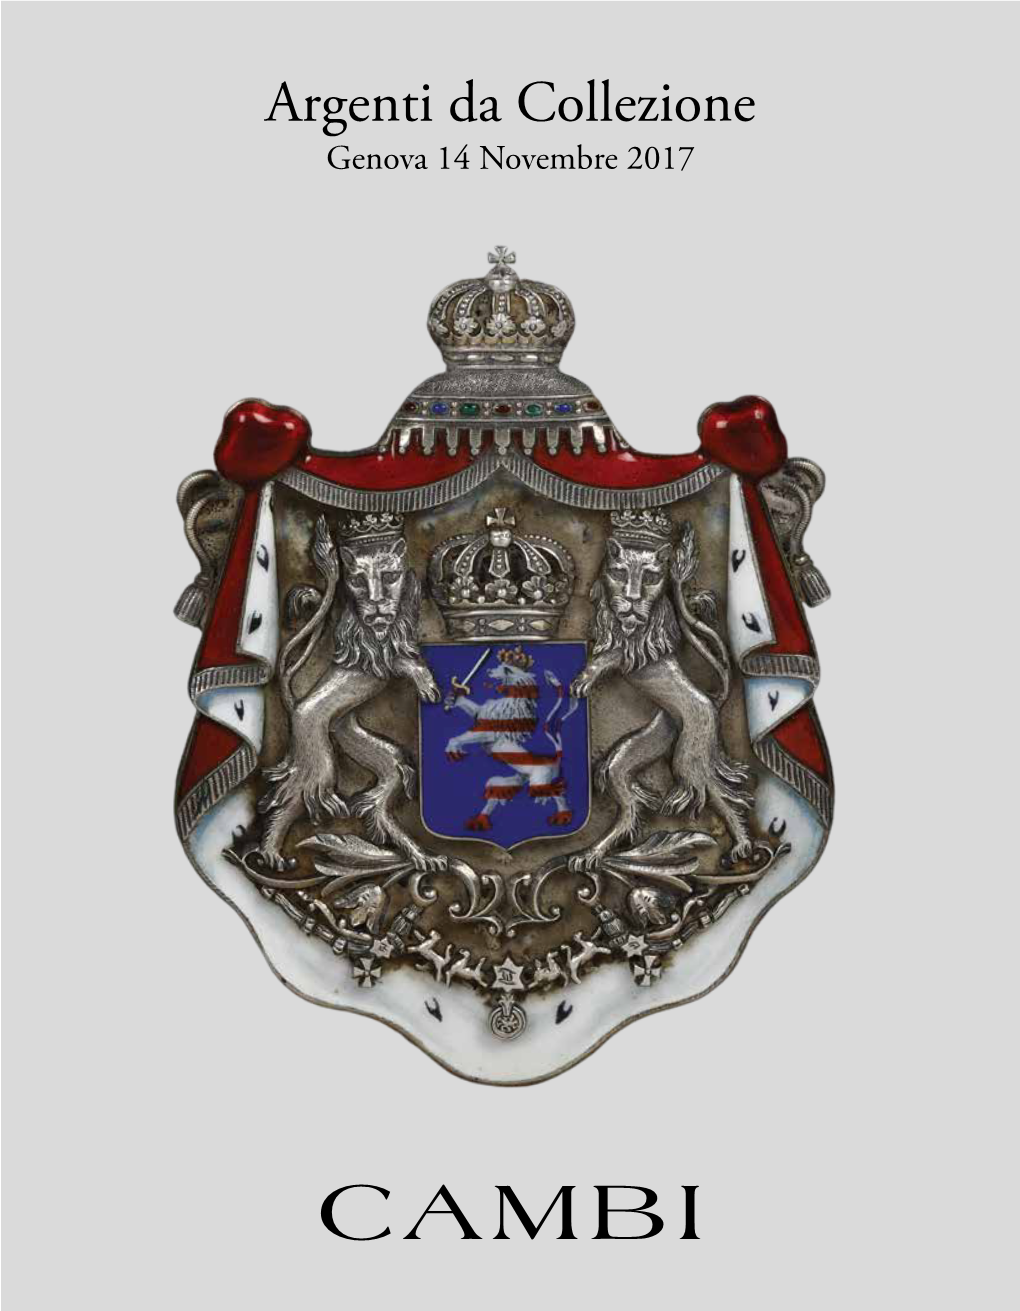 Argenti Da Collezione Genova 14 Novembre 2017 a RGENTI